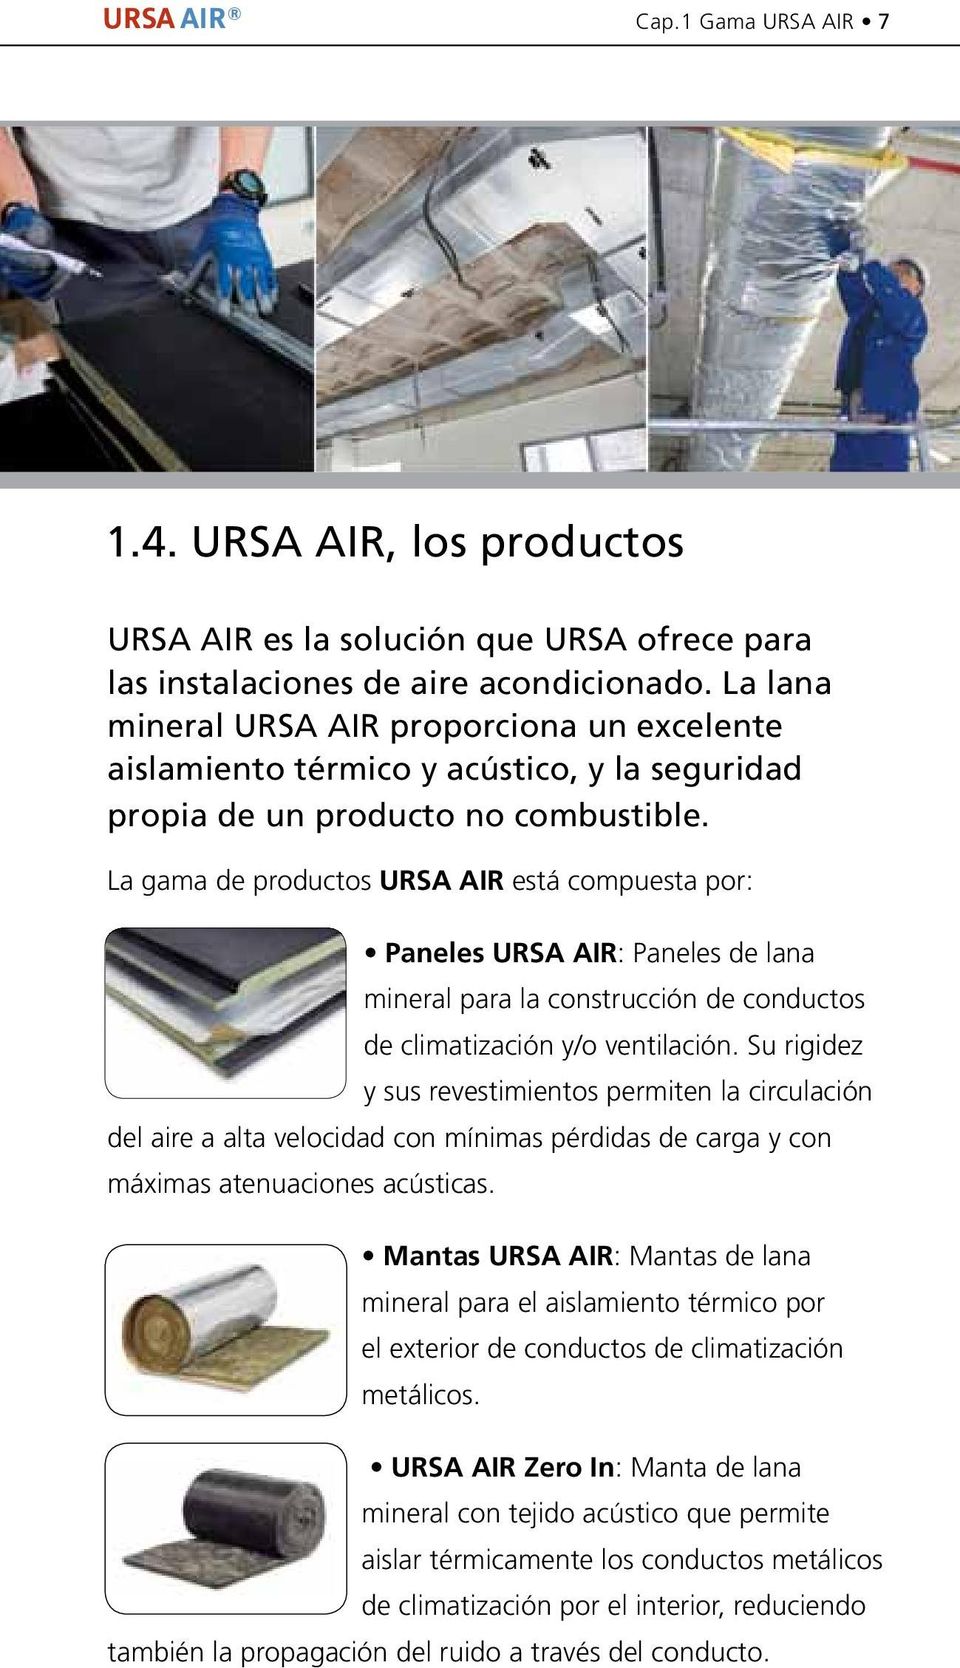 La gama de productos URSA AIR está compuesta por: Paneles URSA AIR: Paneles de lana mineral para la construcción de conductos de climatización y/o ventilación.